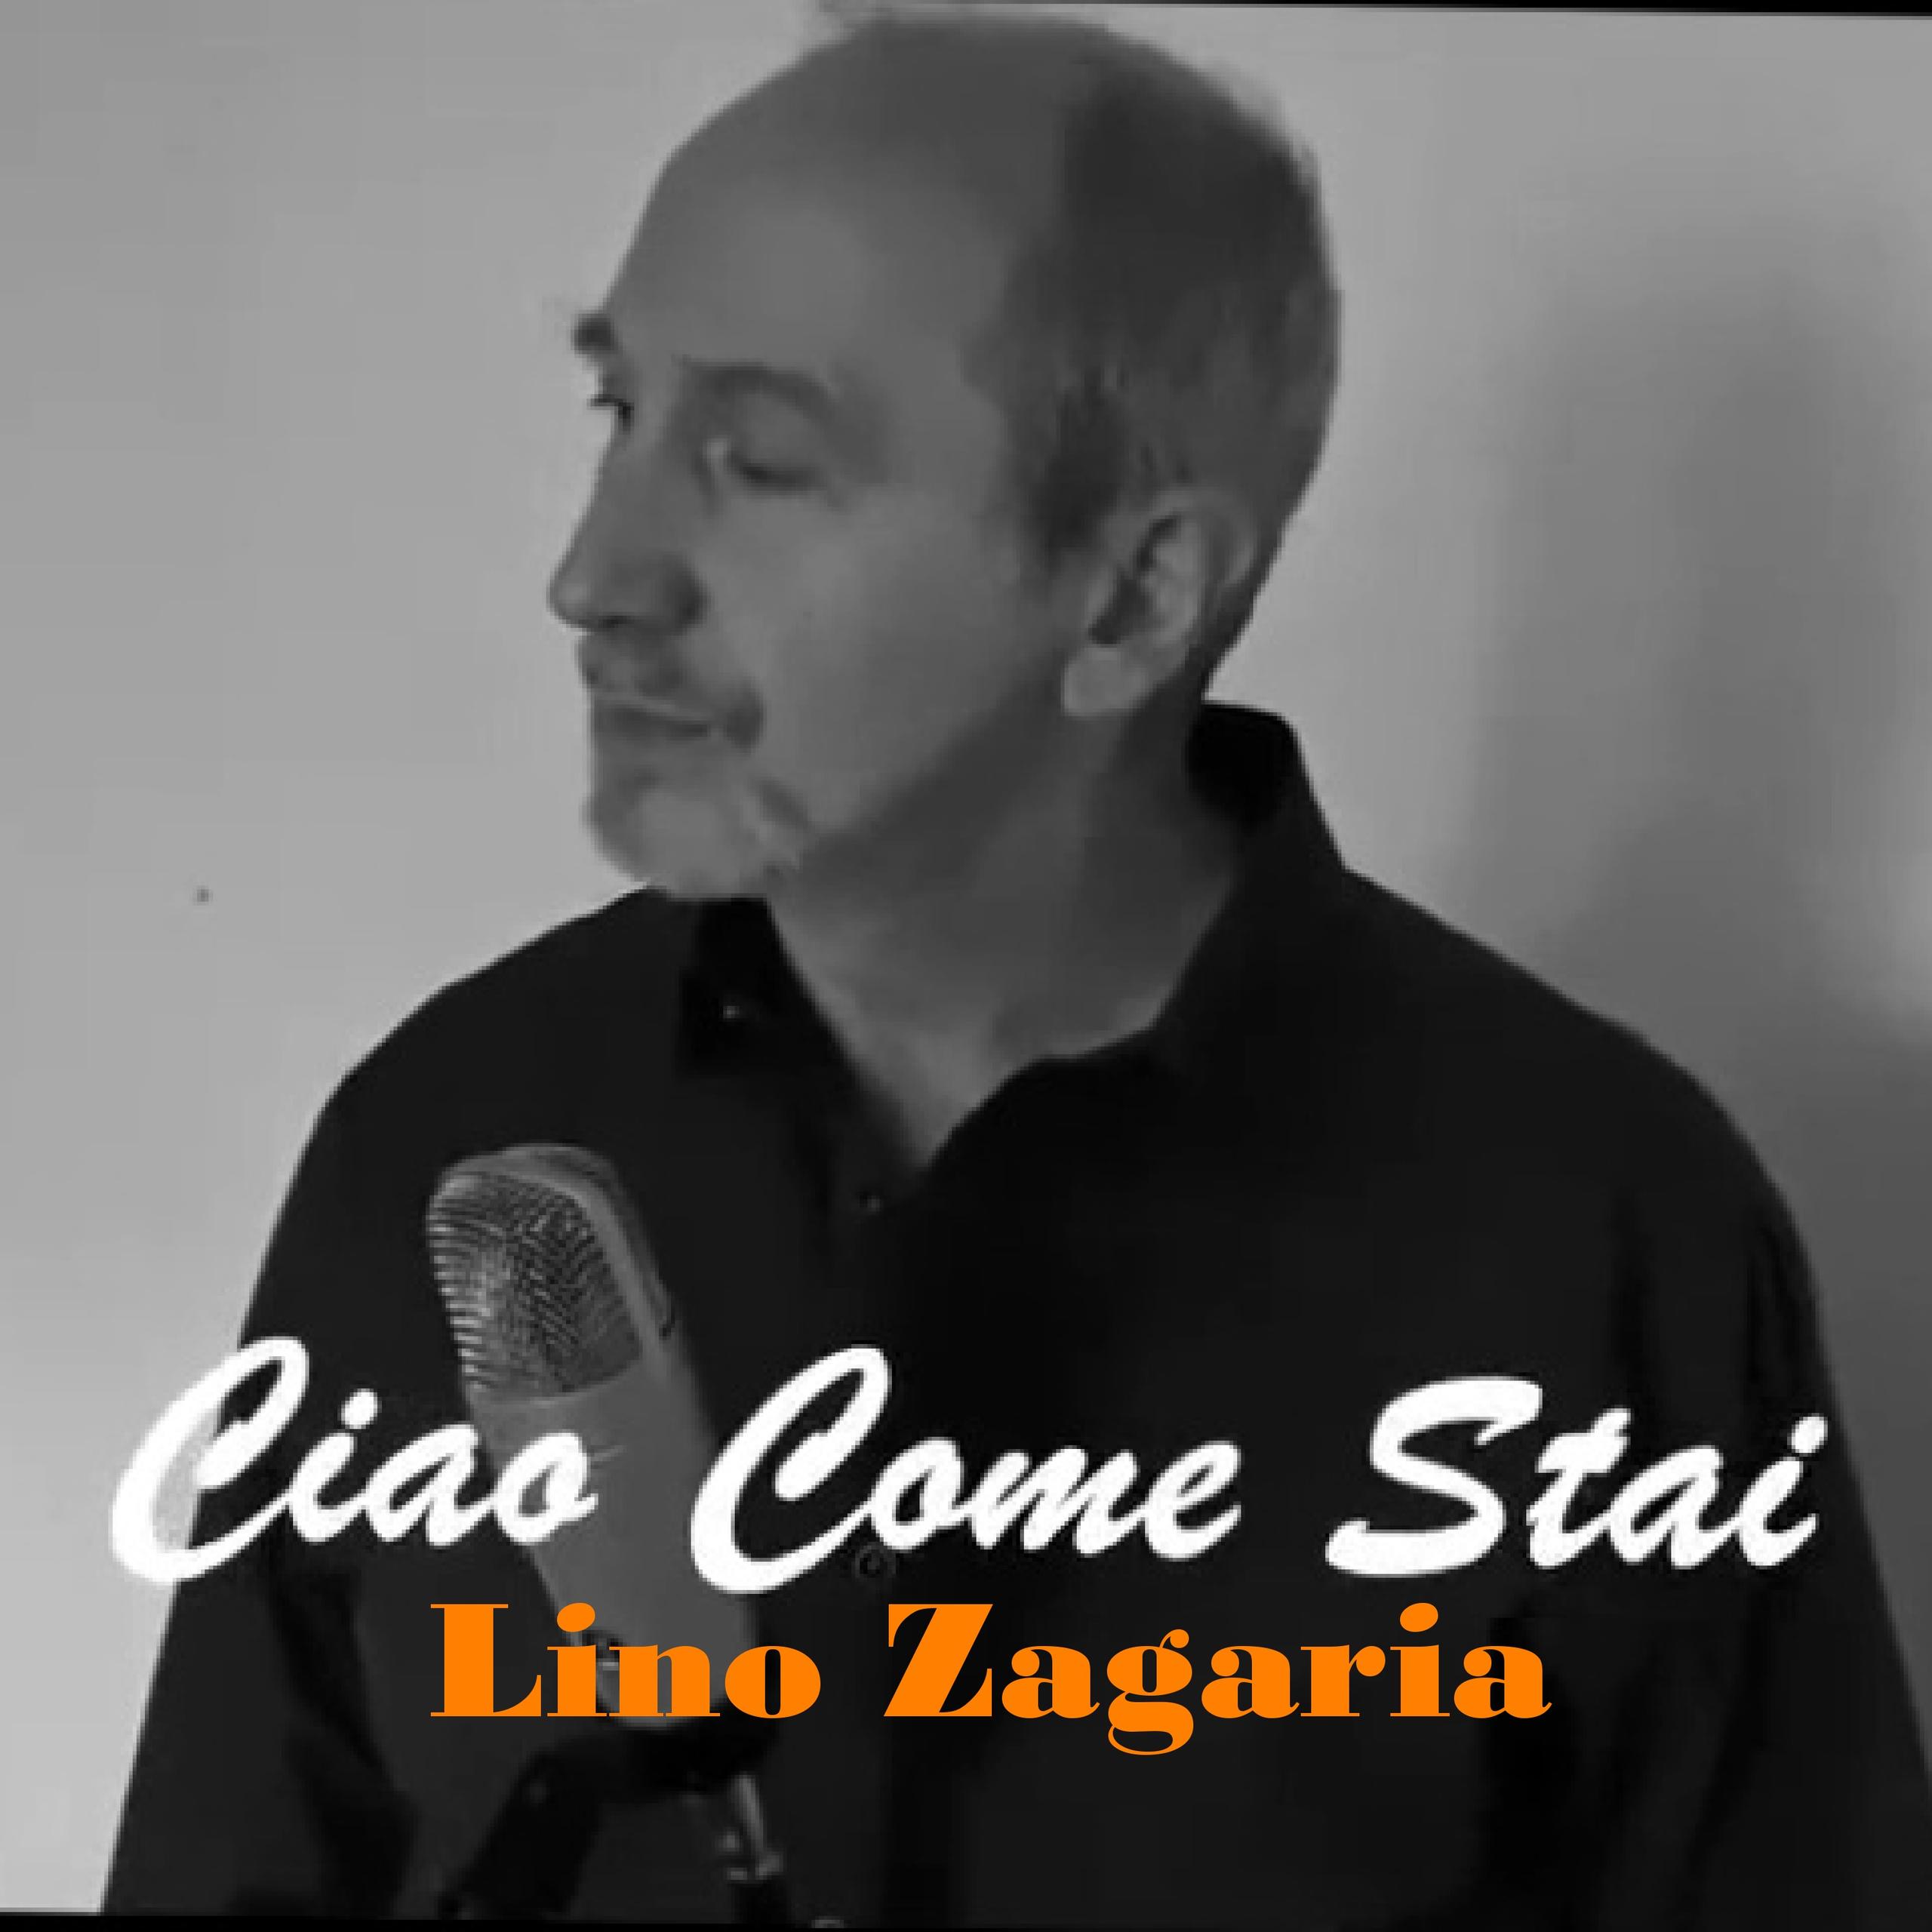 Ciao come stai - Lino Zagaria